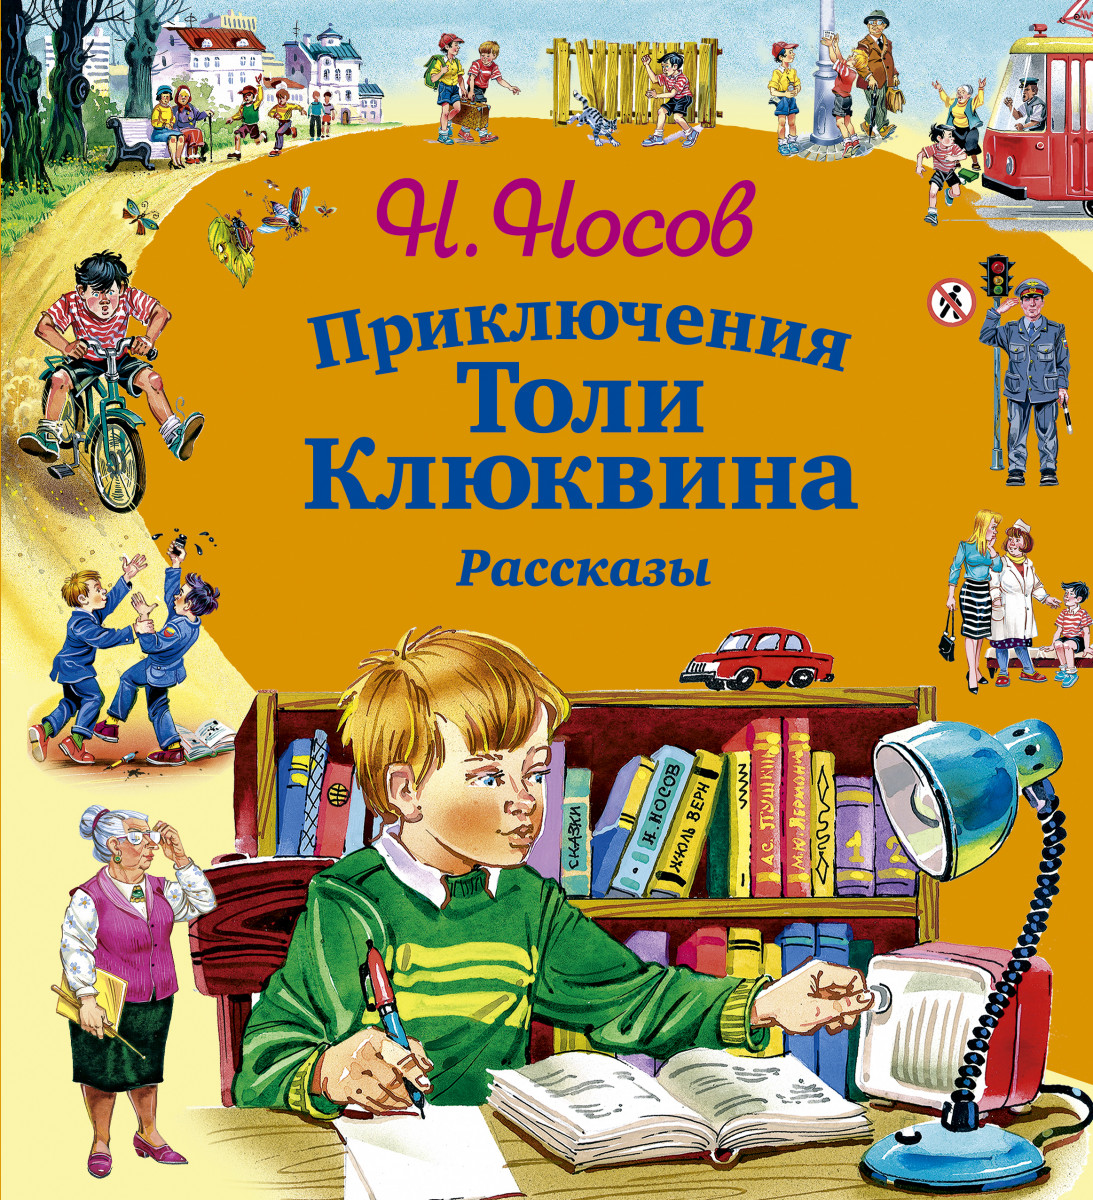 Чтение произведений о детях